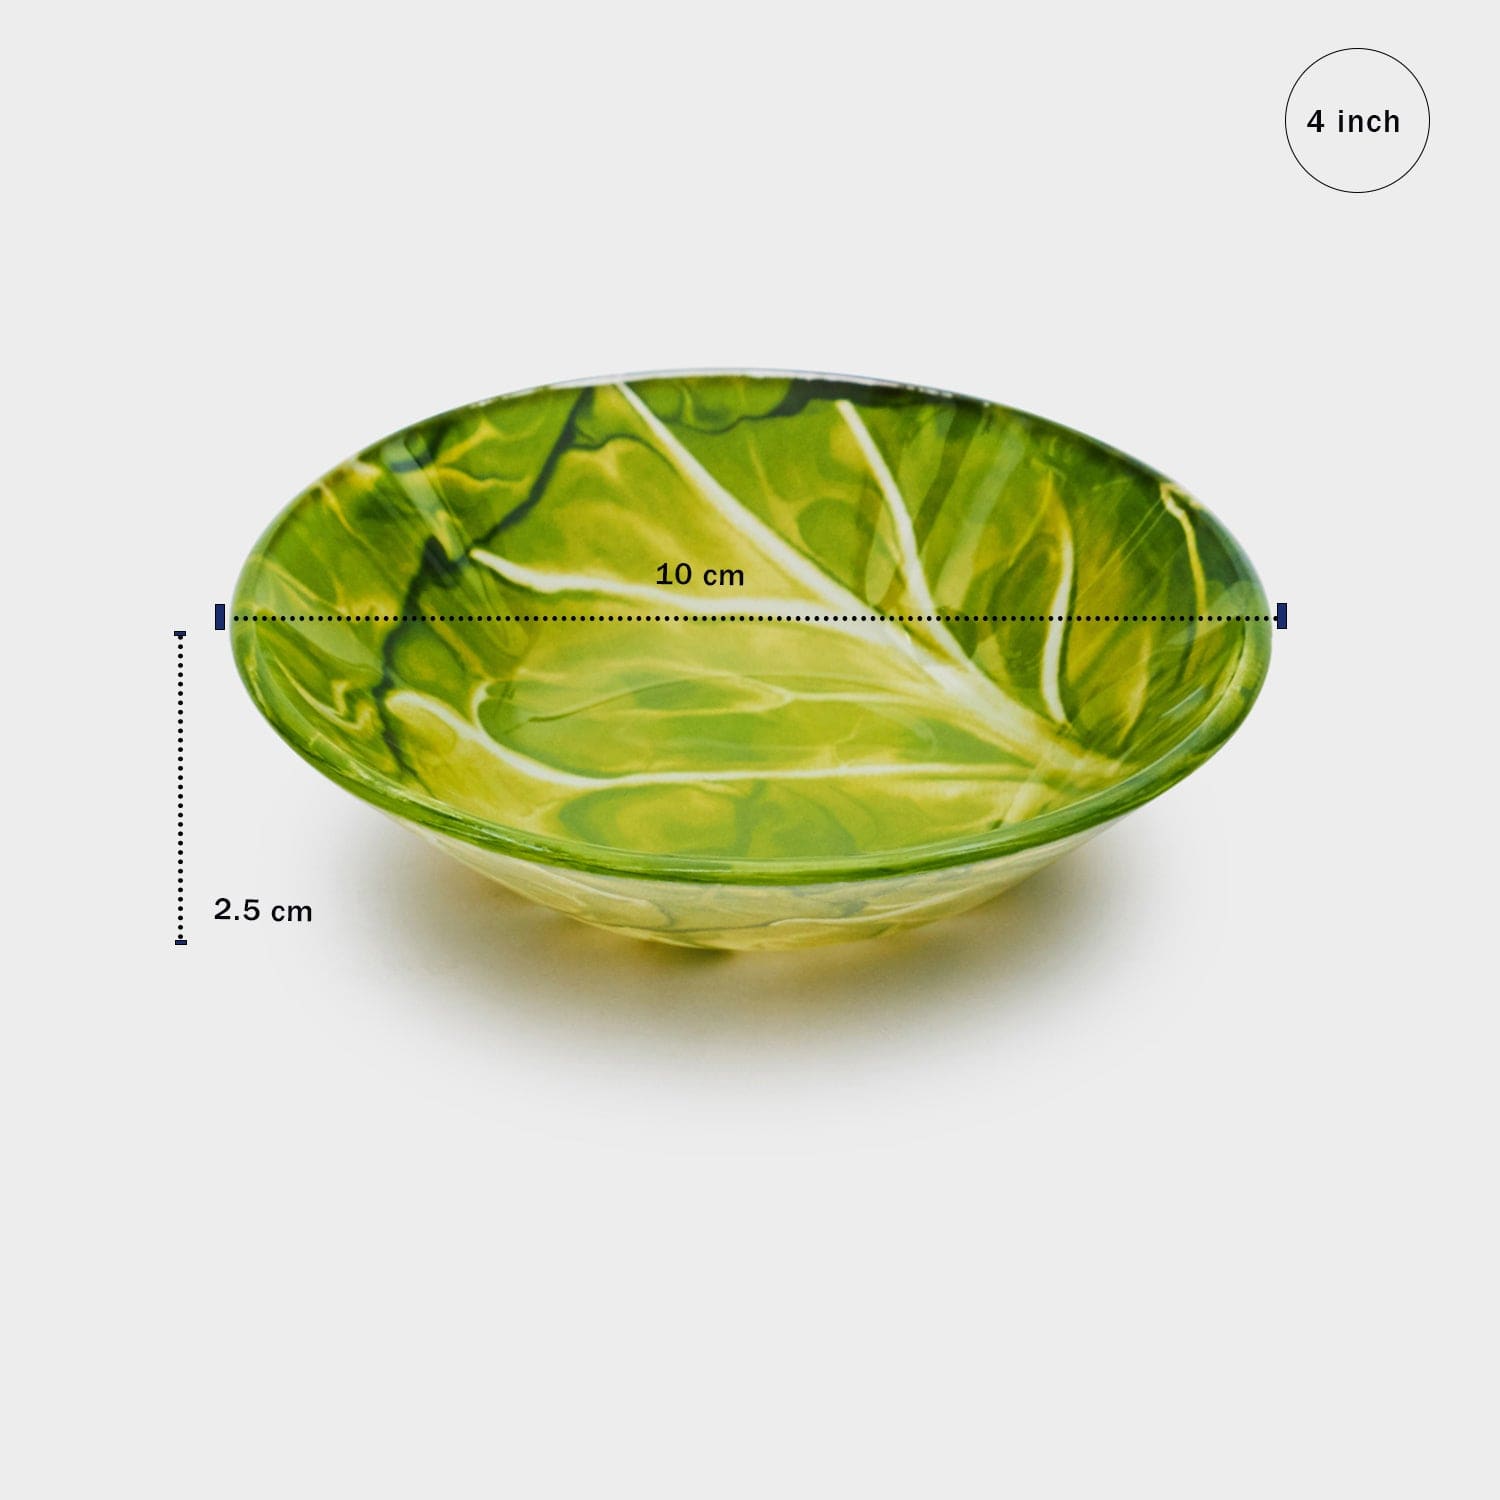 Red Butler Bowls Designer Glass Bowl - Cabbage | 6pcs set DDB10A5 Redbutler